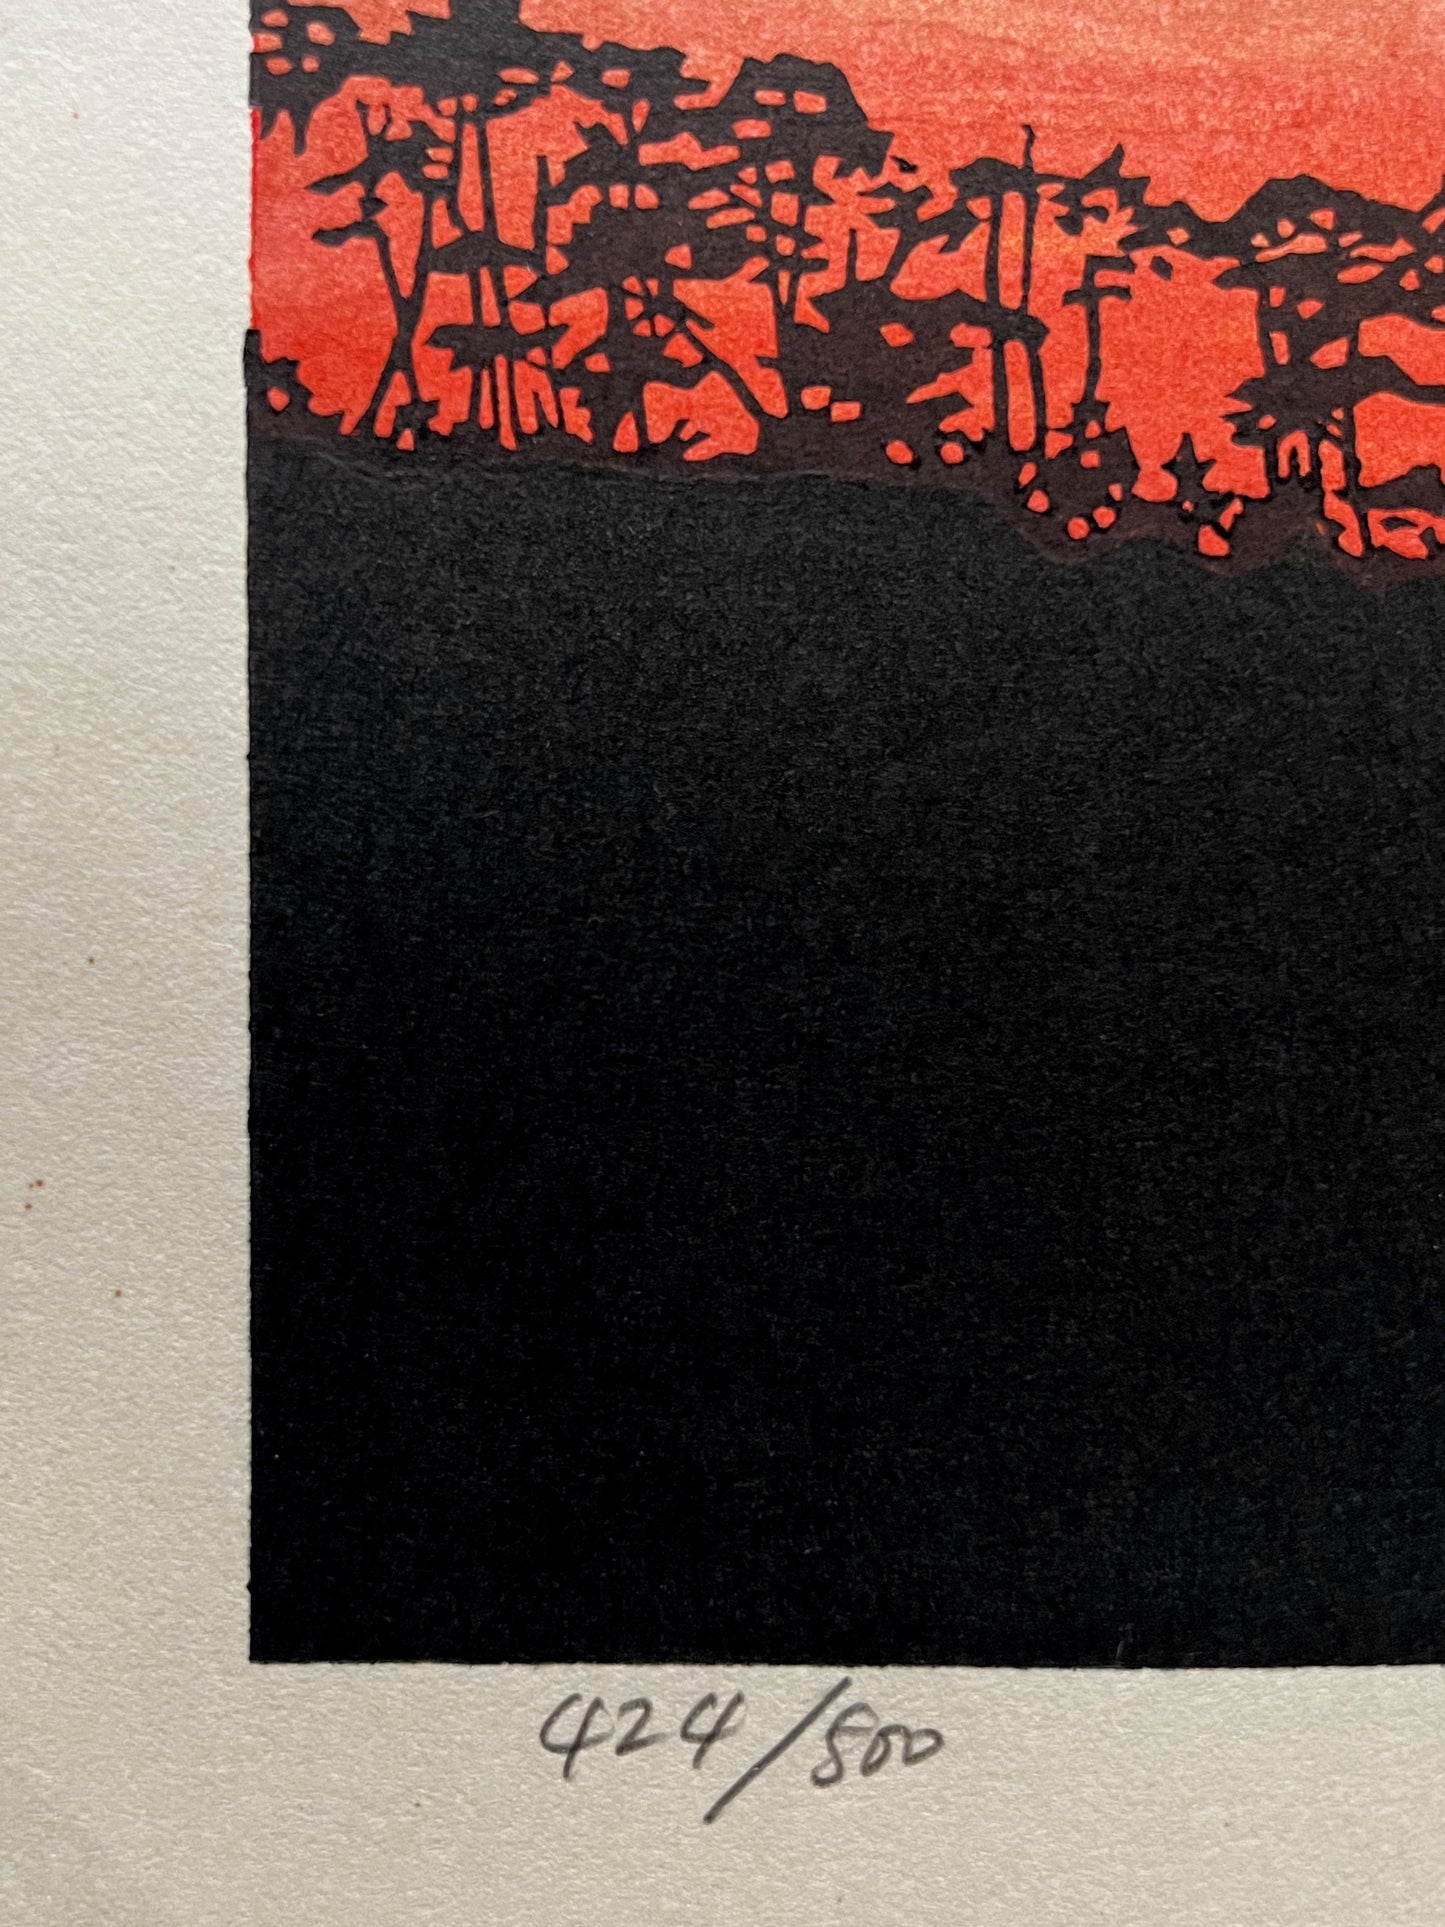 estampe japonaise contemporaine, les arbres du sommet de la montagne se découpent en ombre chinoise sur la lumière rouge flamboyante du coucher de soleil, le numéro de l'estampe 424/500